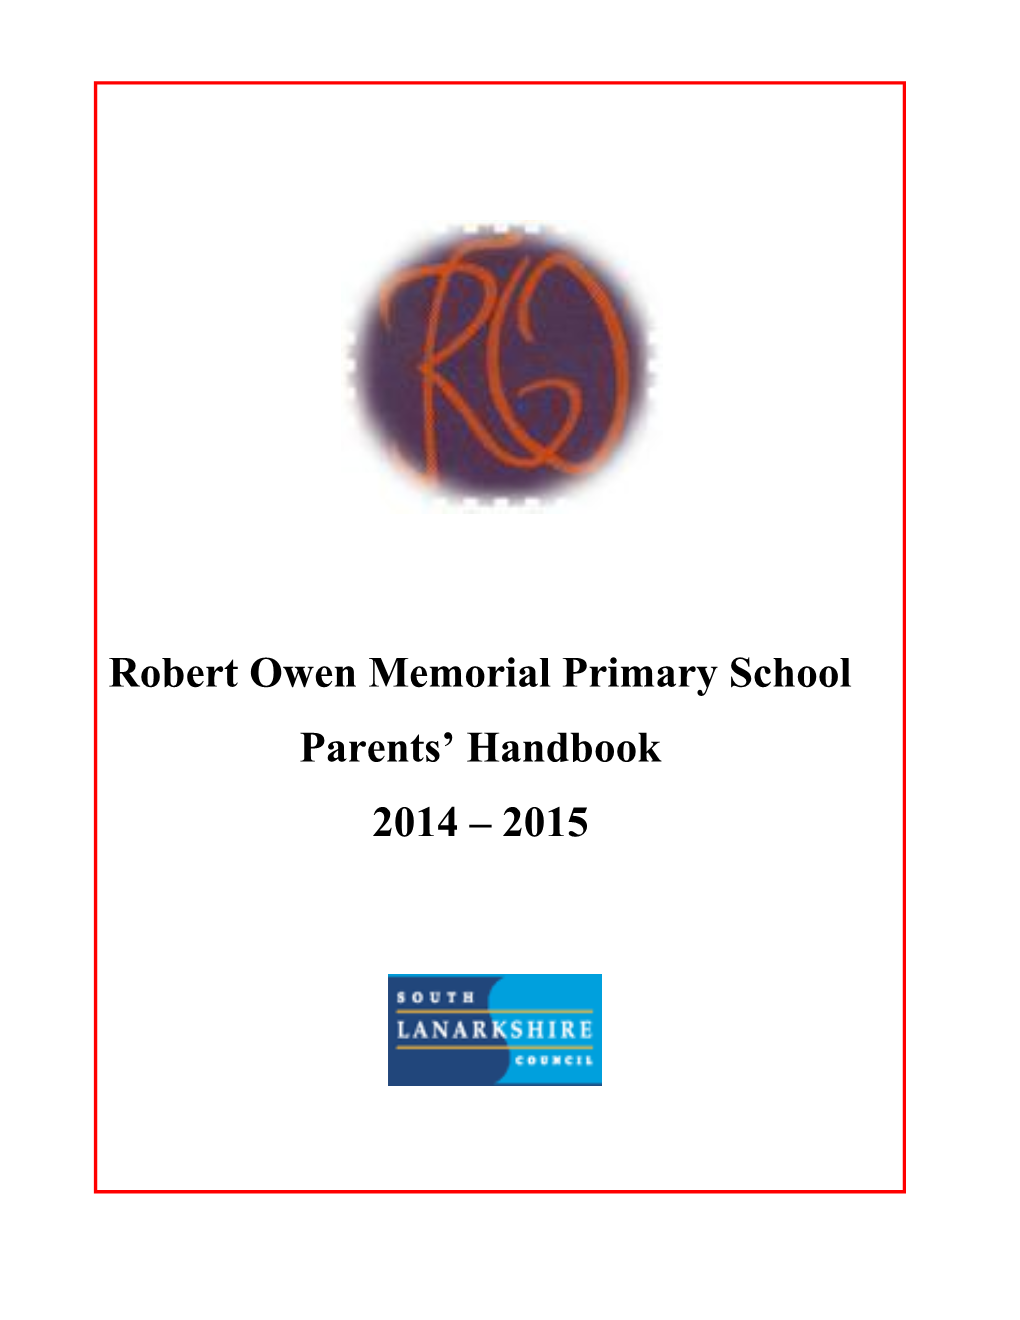 Robert Owen Primary School Handbook